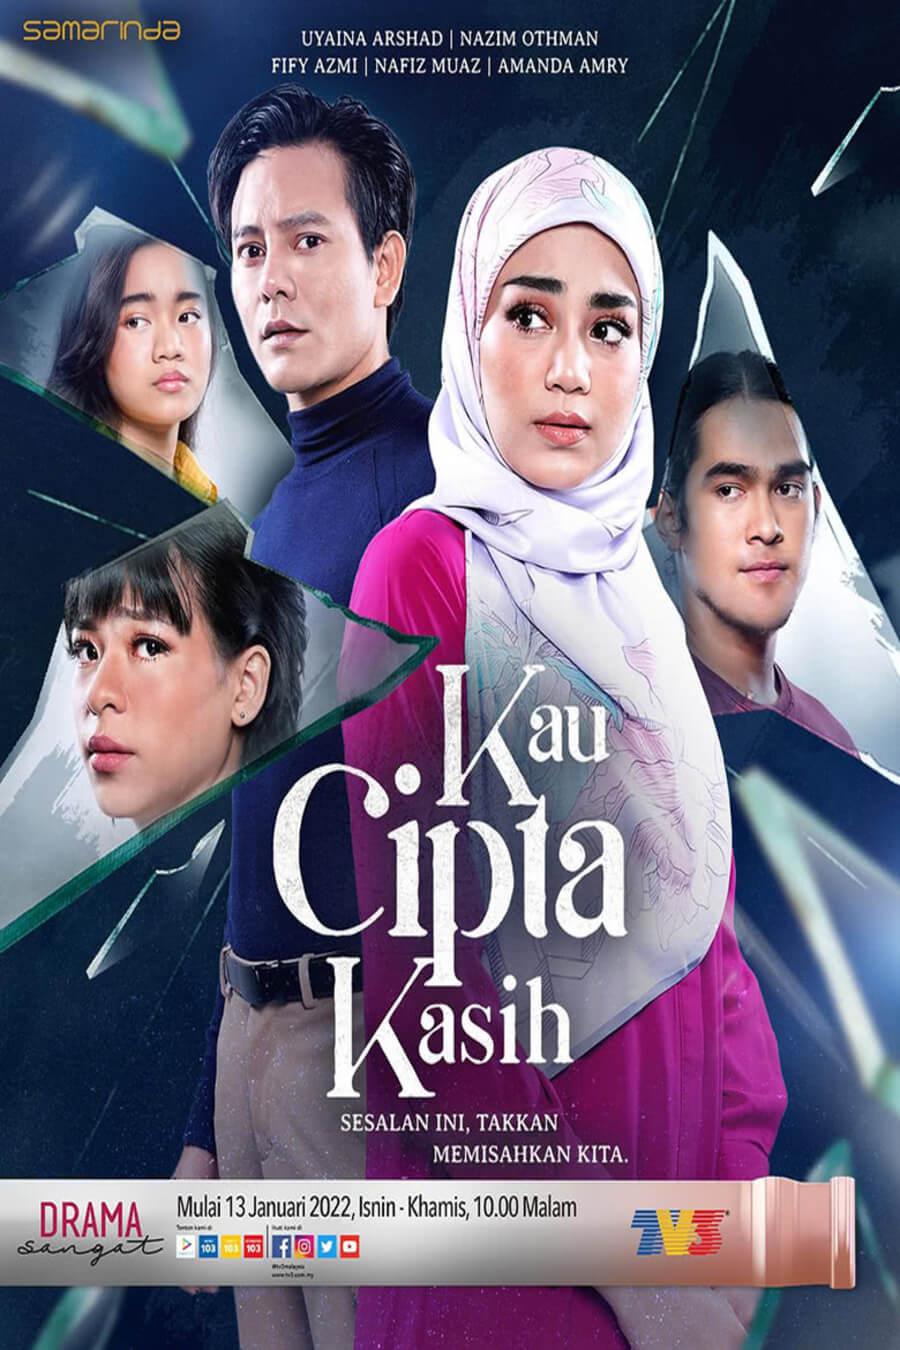 TV ratings for Kau Cipta Kasih in Malaysia. TV3 TV series